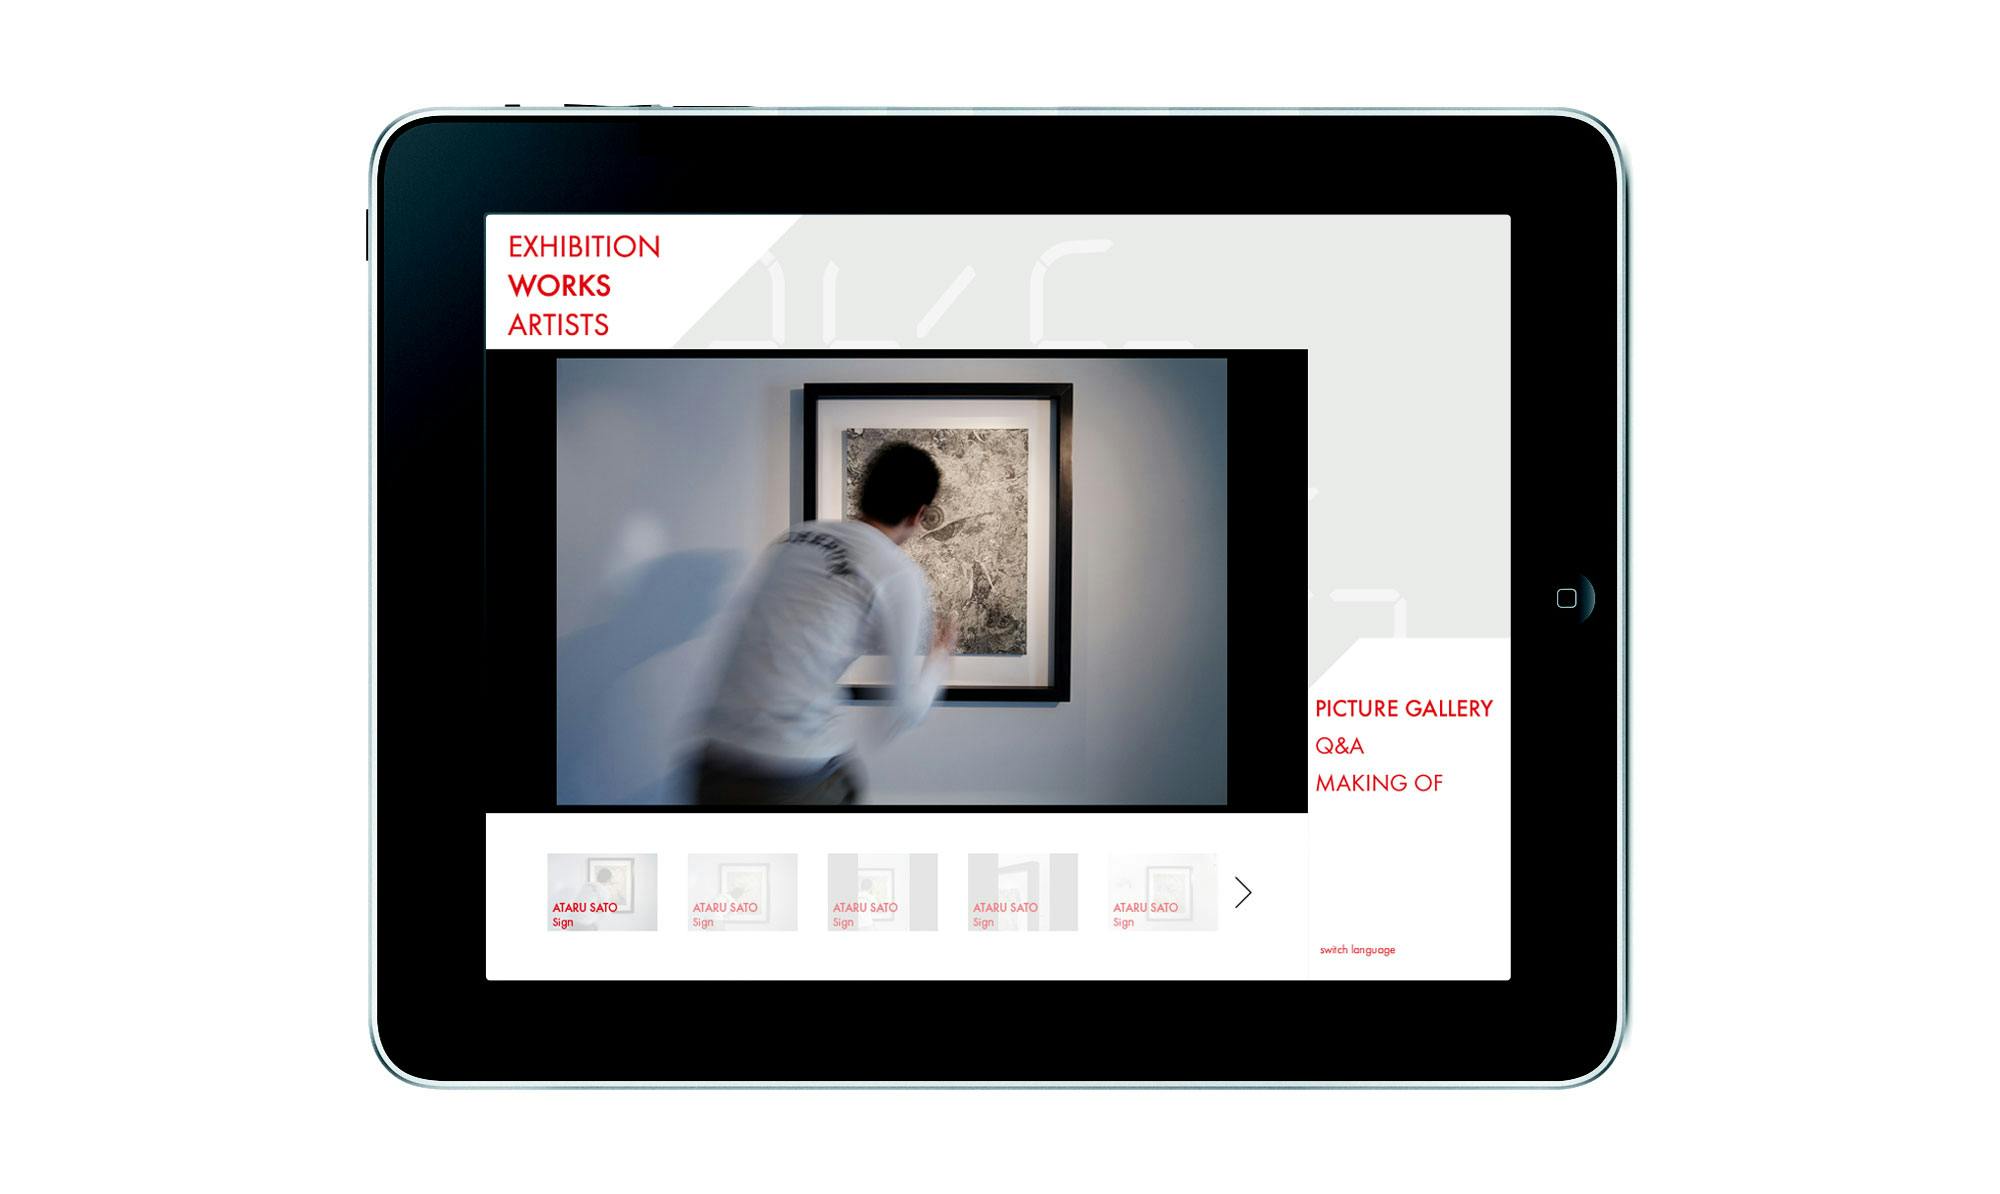 Espace Louis Vuitton Exhibition Guide iPad App